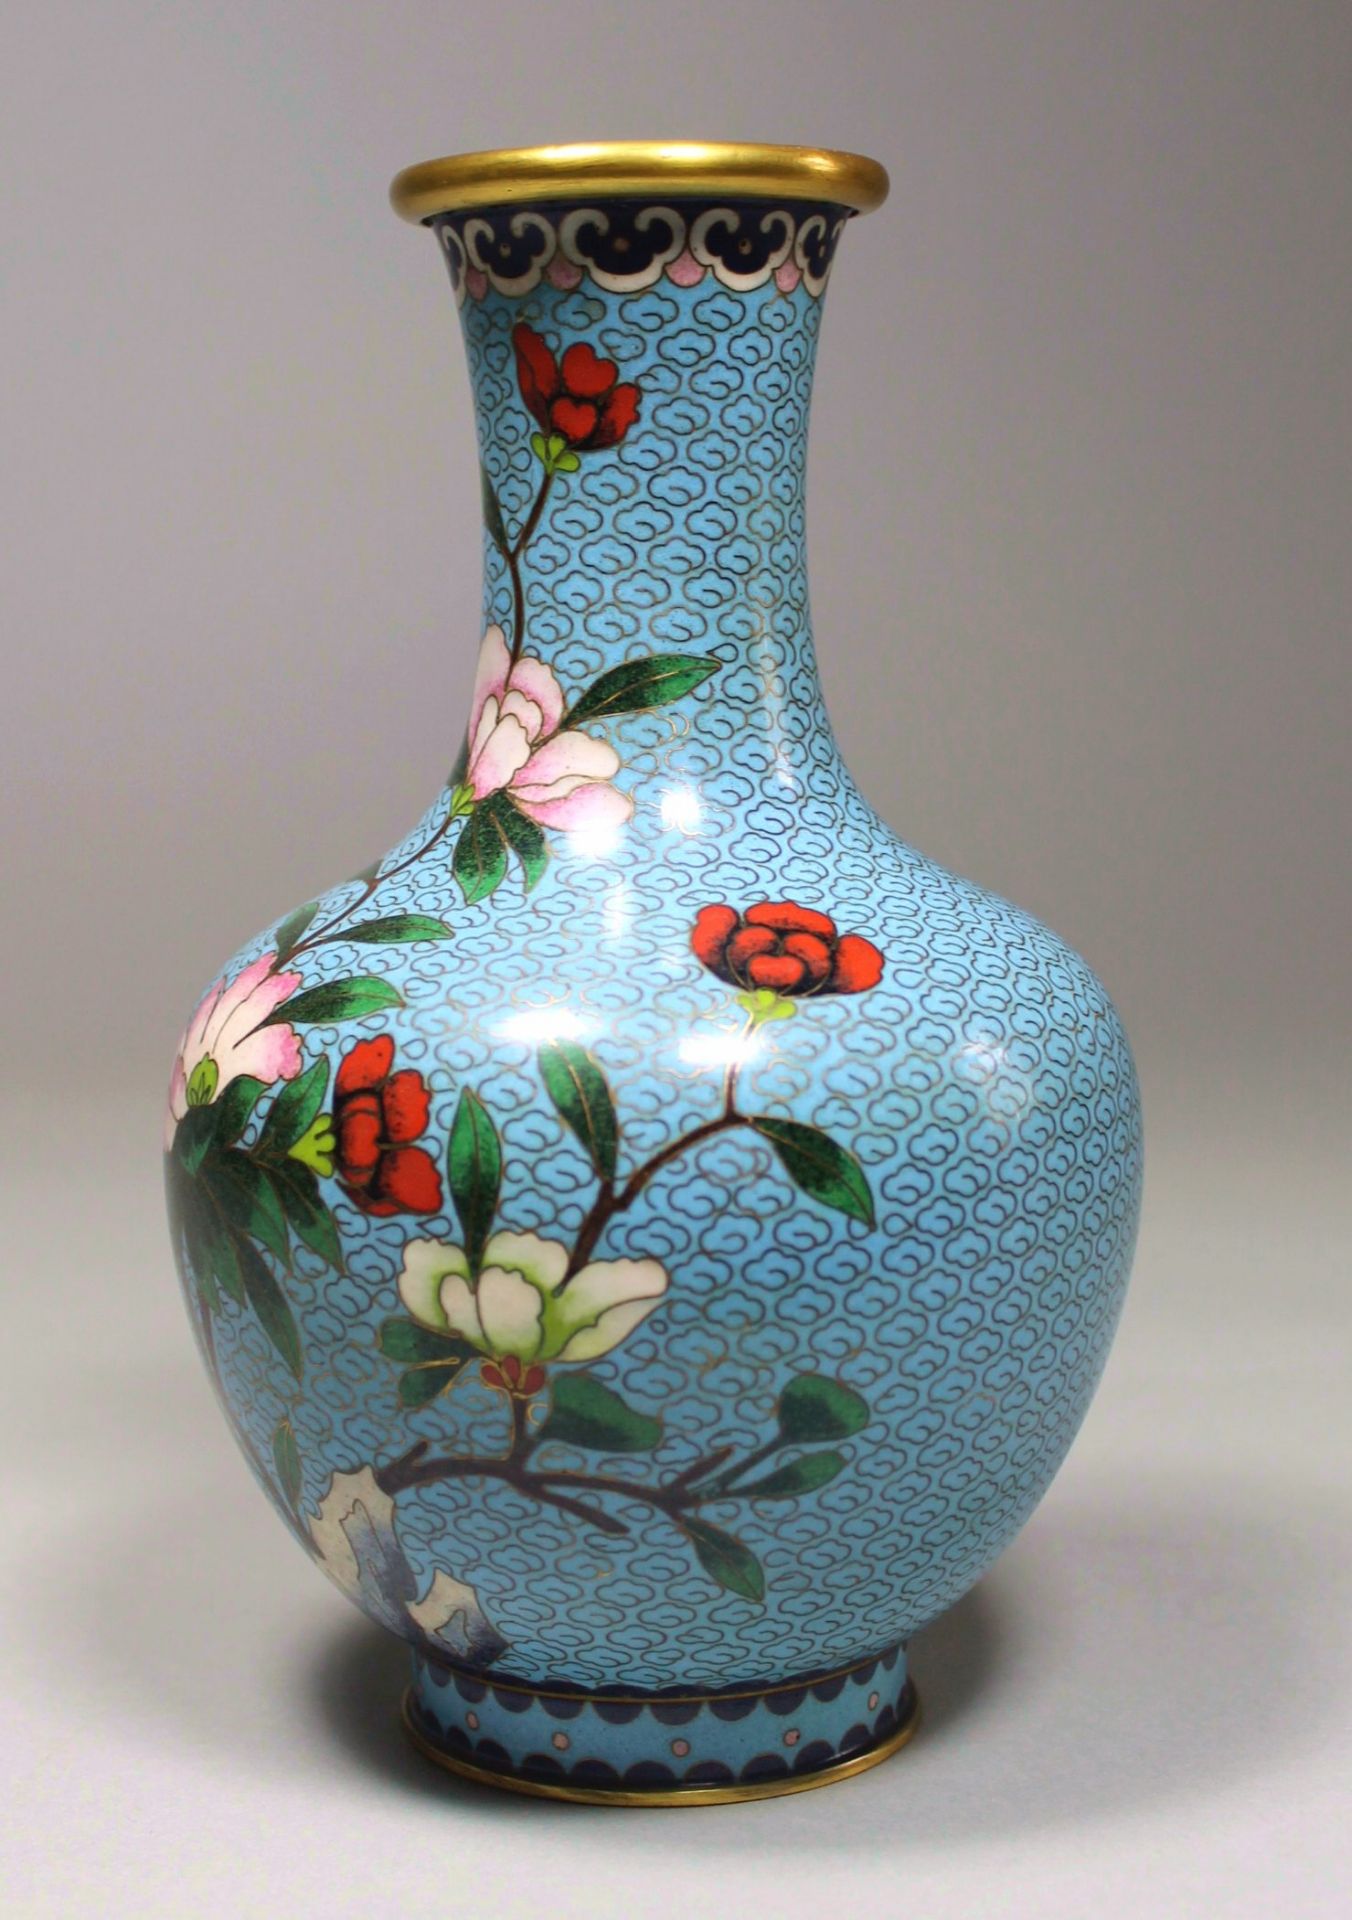 1 Cloisonné-Vase Messing/Emaille, polychromer floraler Dekor auf hellblauem Untergrund, eingezogener - Bild 2 aus 4